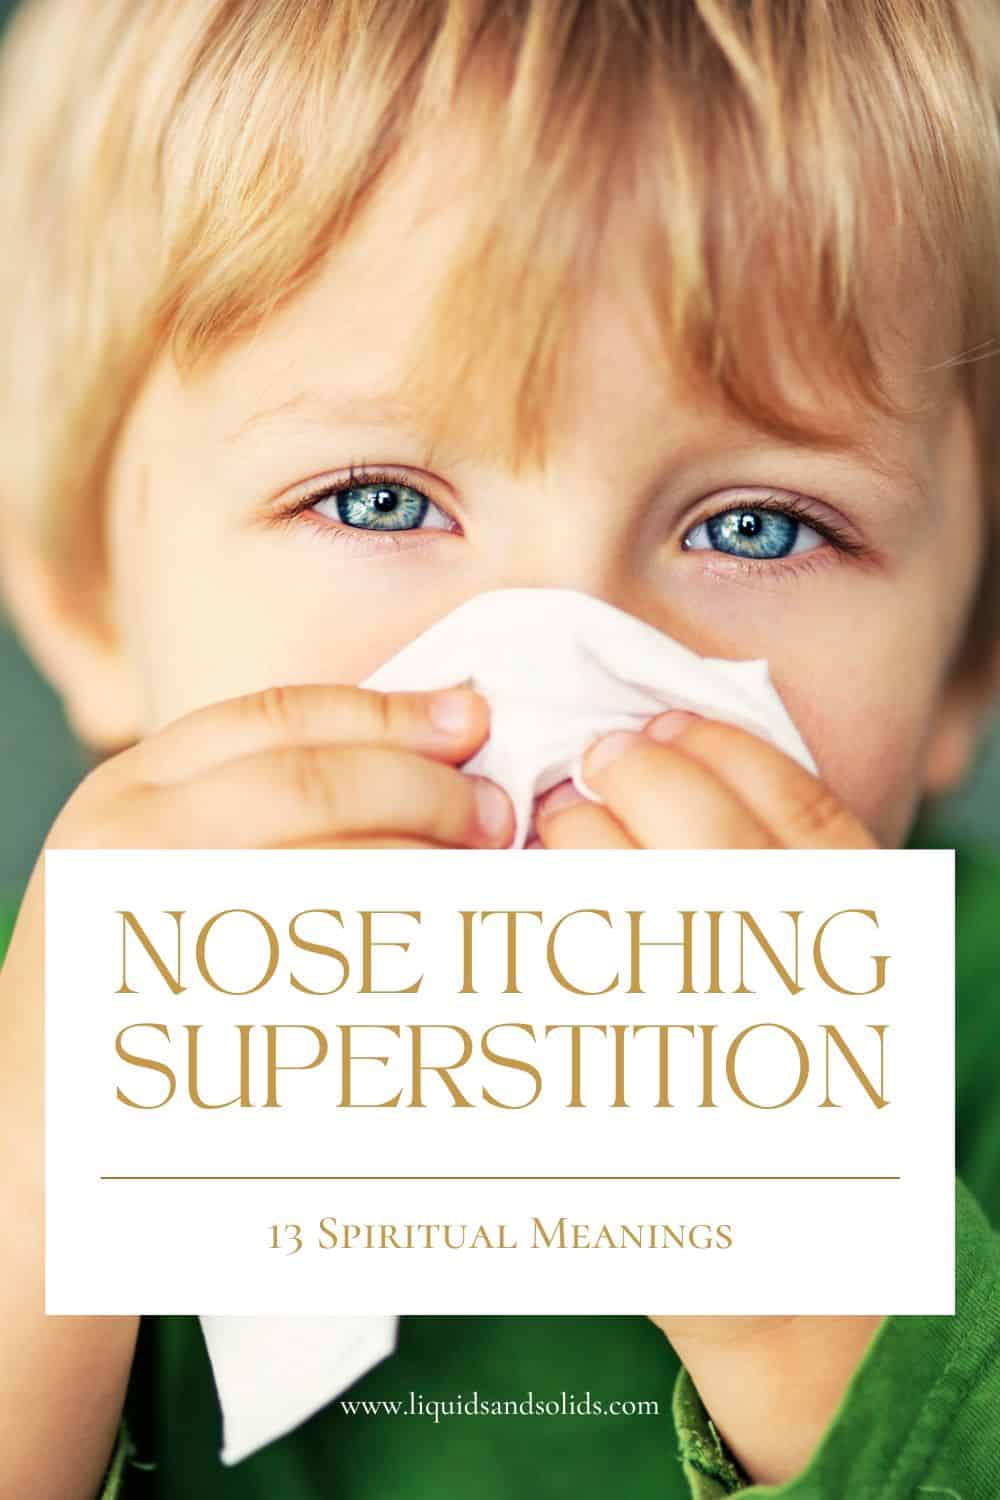  Nina sügelemine ebausk: Mida tähendab see, kui su nina sügeleb? (13 vaimset tähendust)